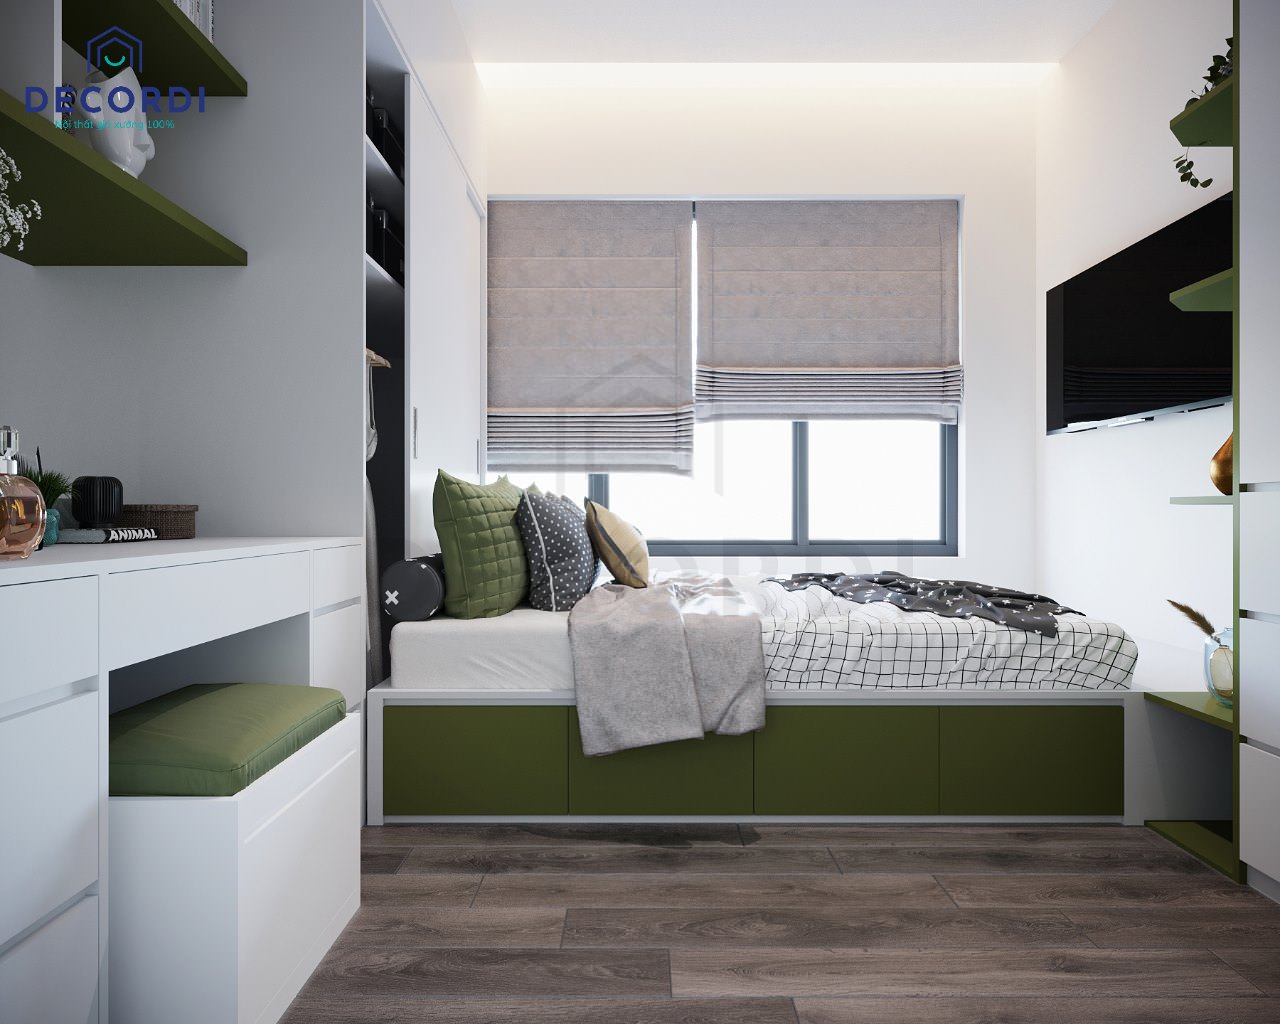 Giường ngủ gỗ dạng bục có hộc kéo tiết kiệm không gian được phối màu xanh lá đẹp mắt